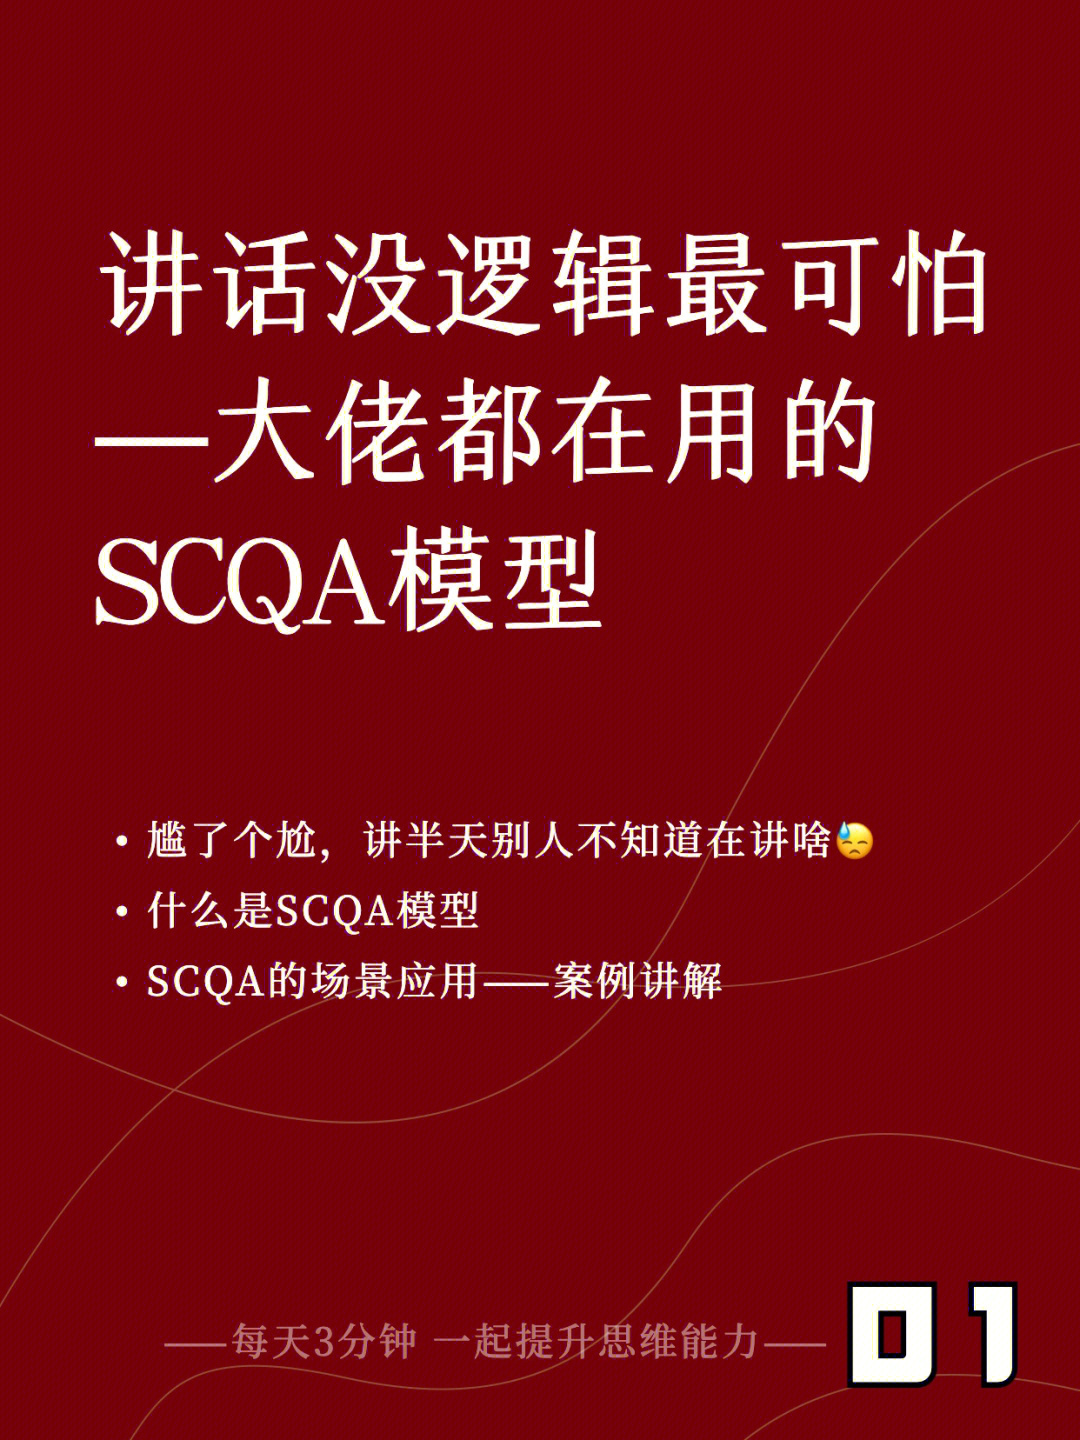 scqa模型范文图片